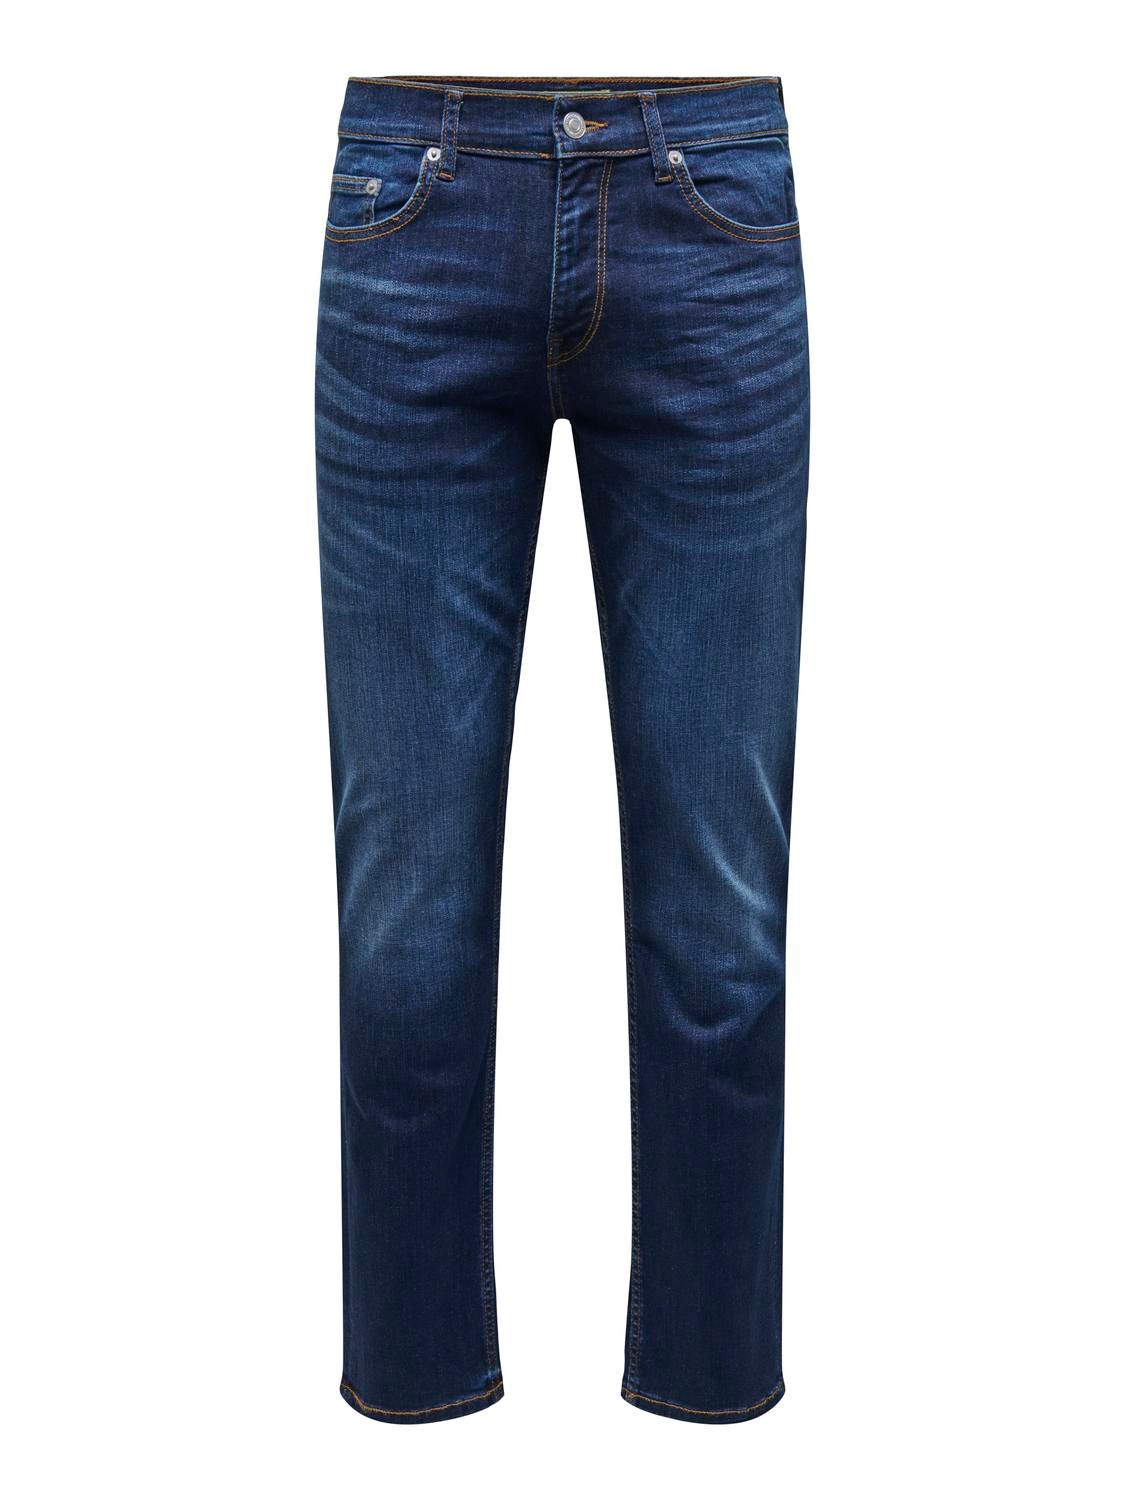 ONLY & SONS Jeans Regular Fit -Dark Blue Denim - 22027641